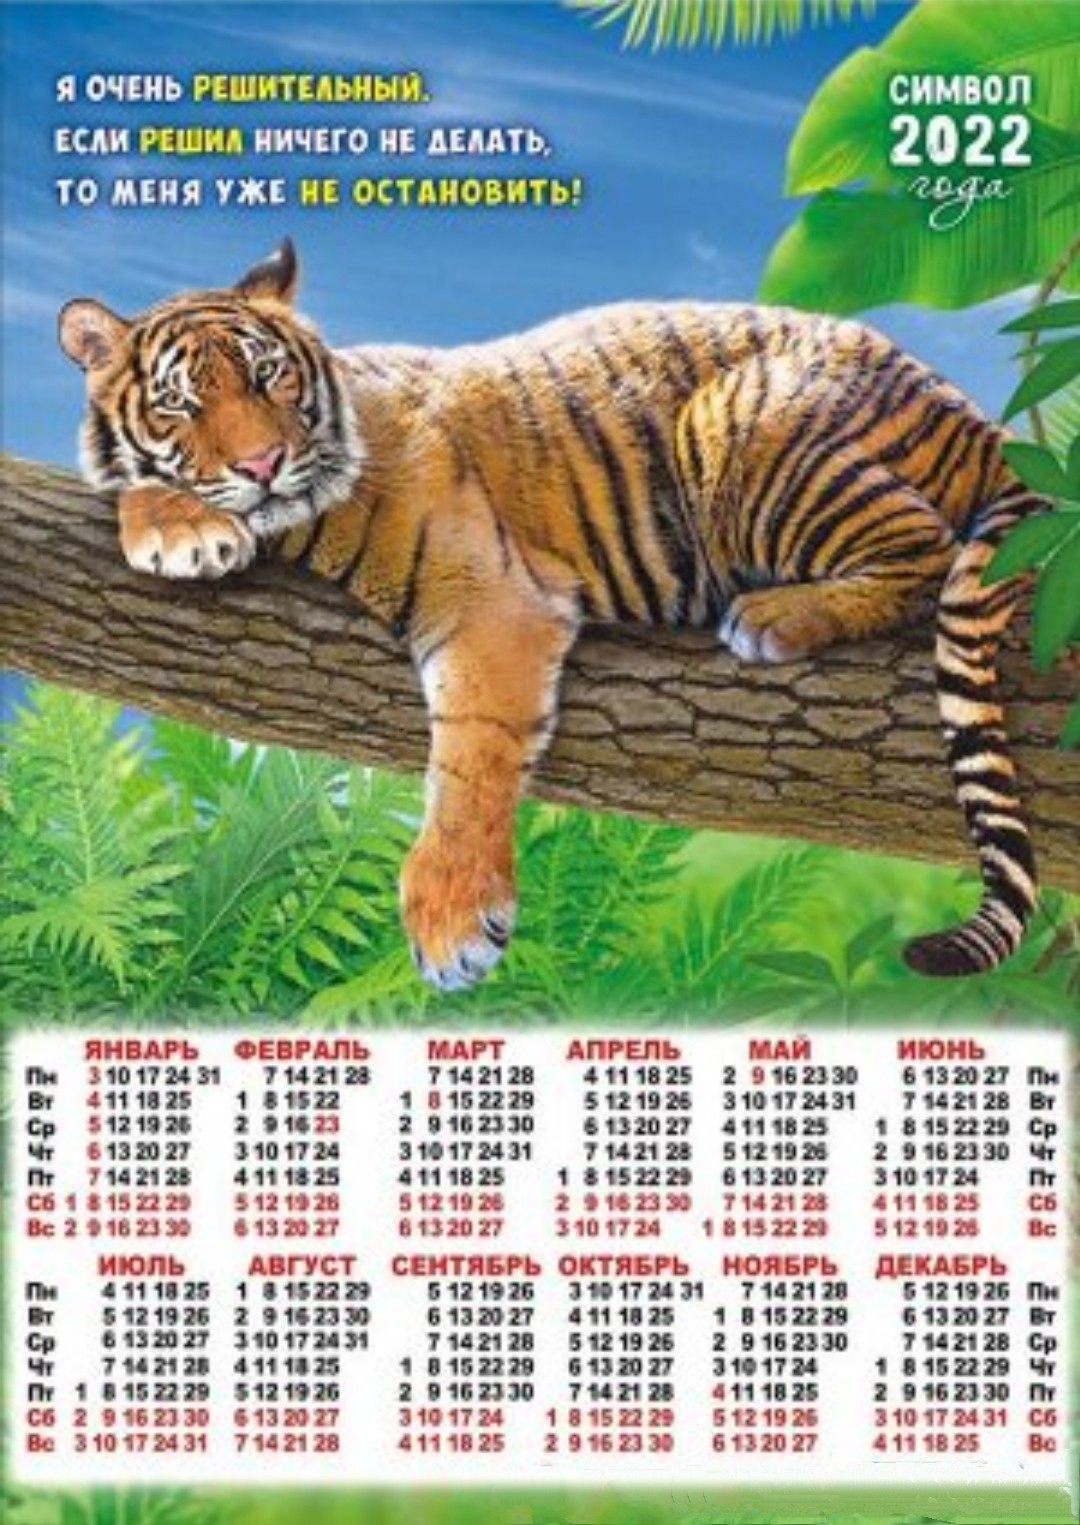 производственный календарь на 2022 год с тигром распечатать